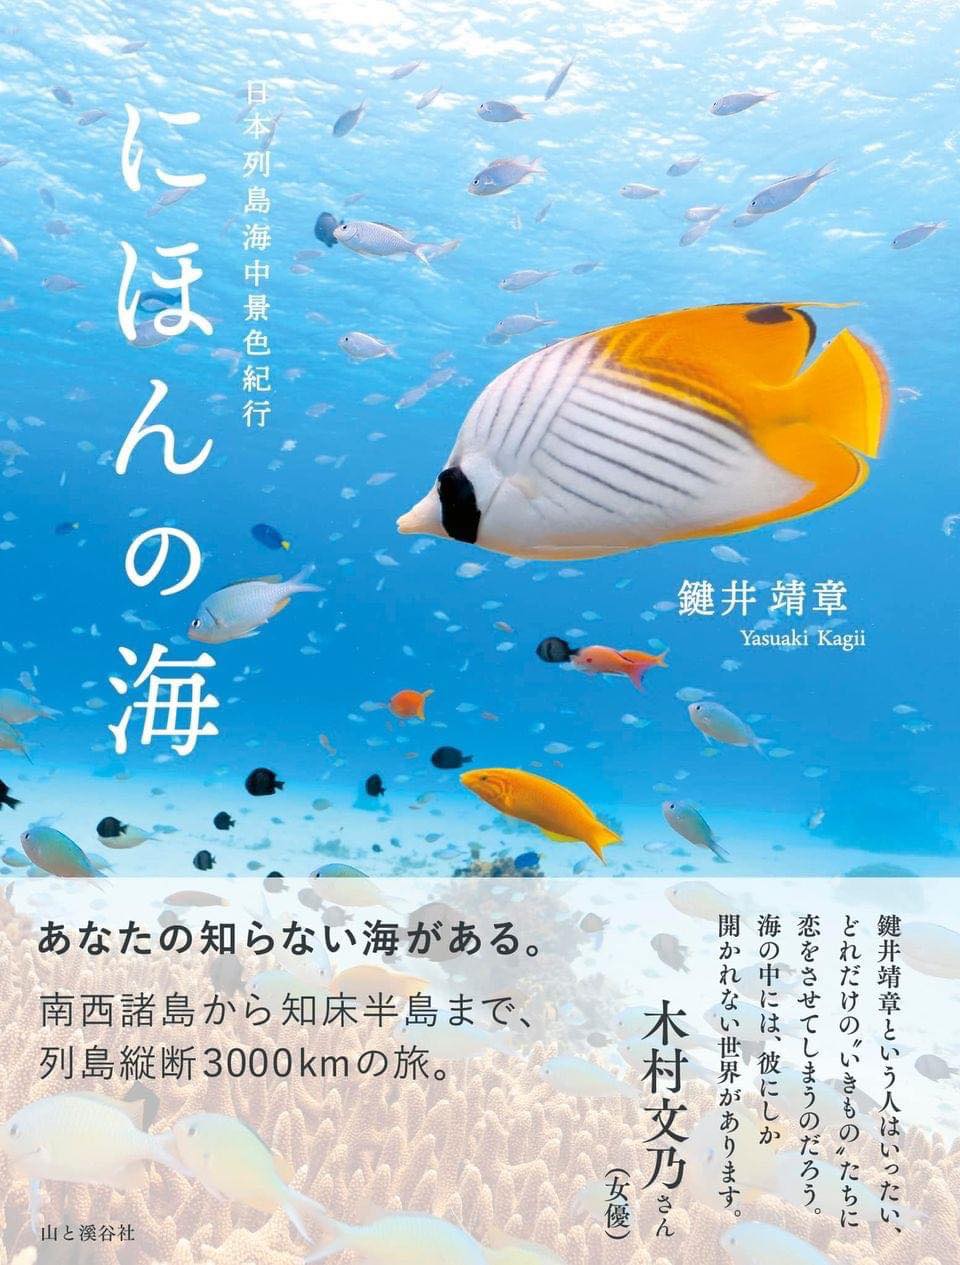 帯には何度か一緒に水中撮影旅行をしている女優の木村文乃さんが素敵なコメントを書いている